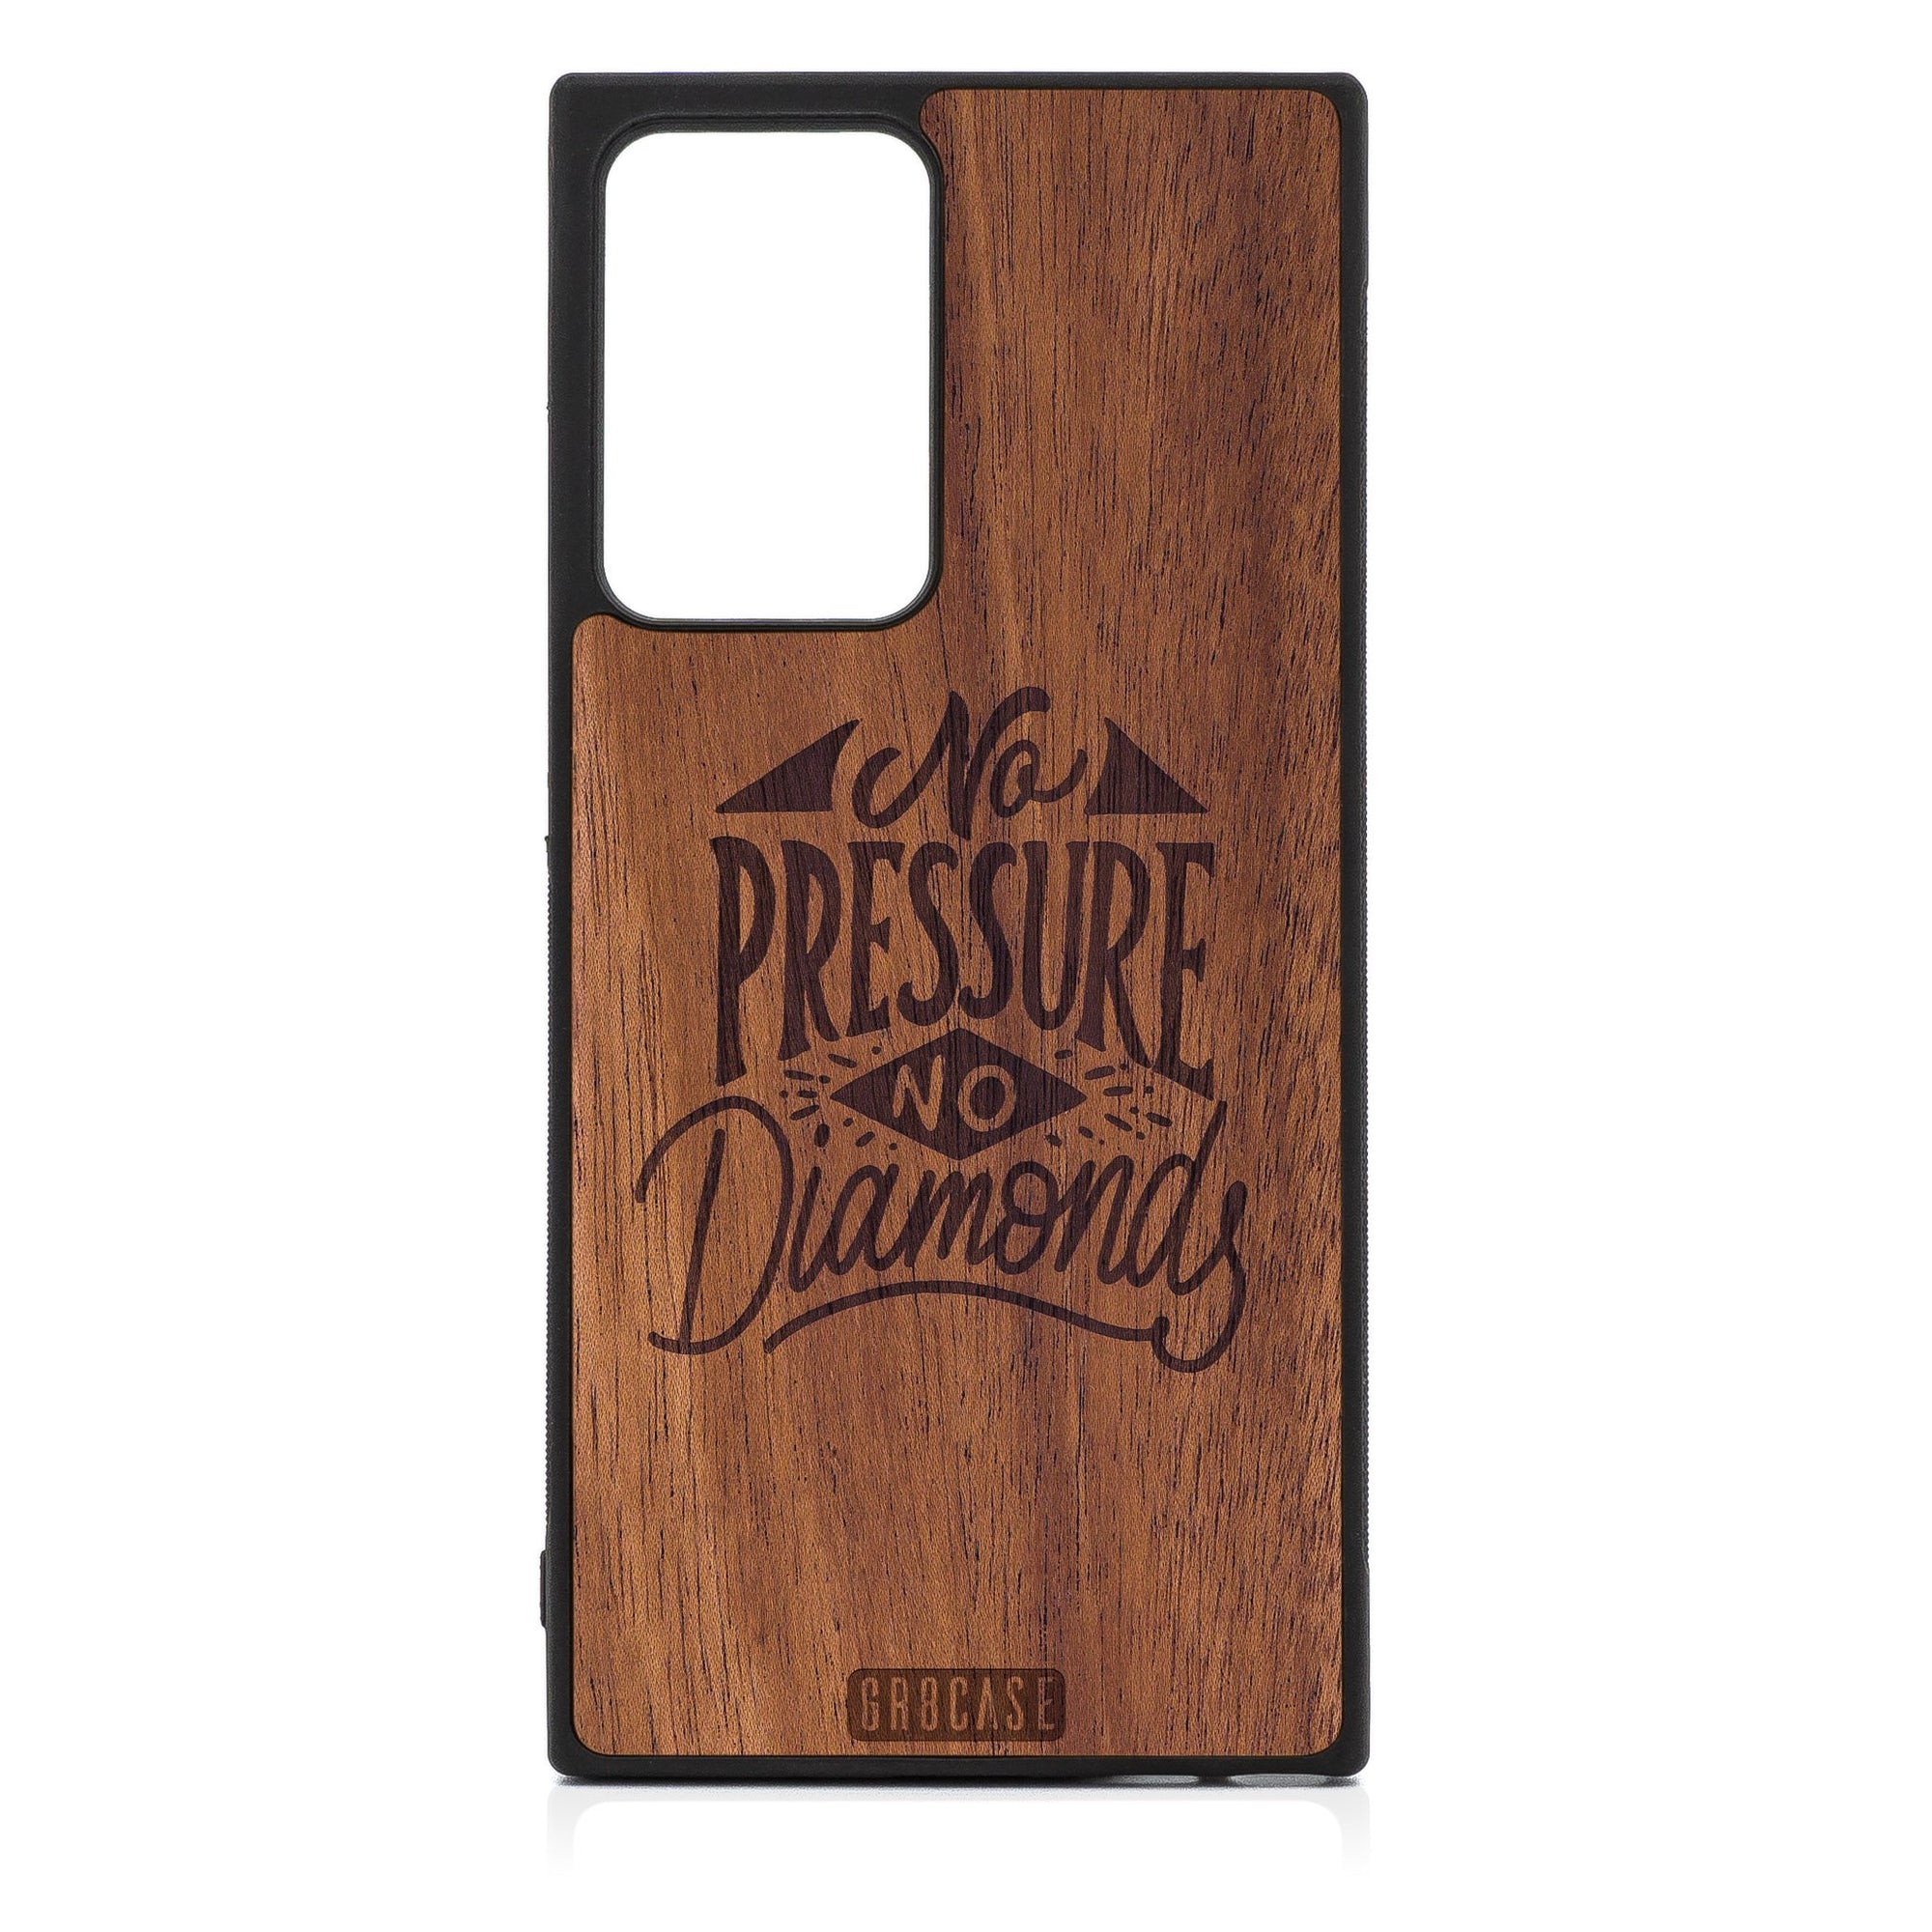 No Pressure No Diamonds Design Wood Case For Samsung Galaxy Note 20 Ultra